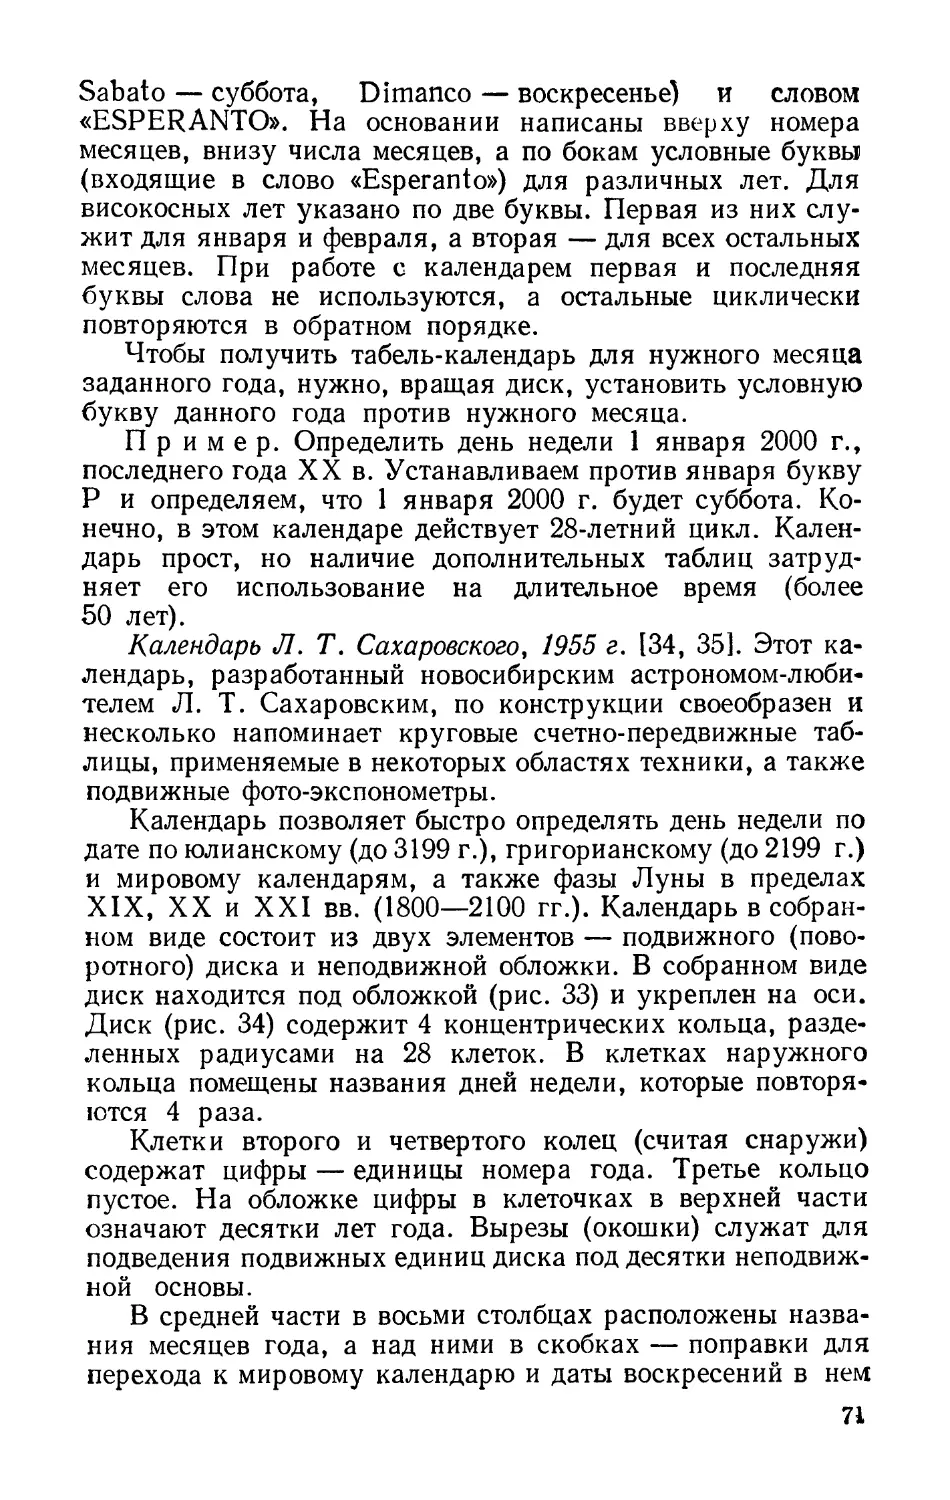 Календарь Л. Т. Сахаровского, 1955 г.